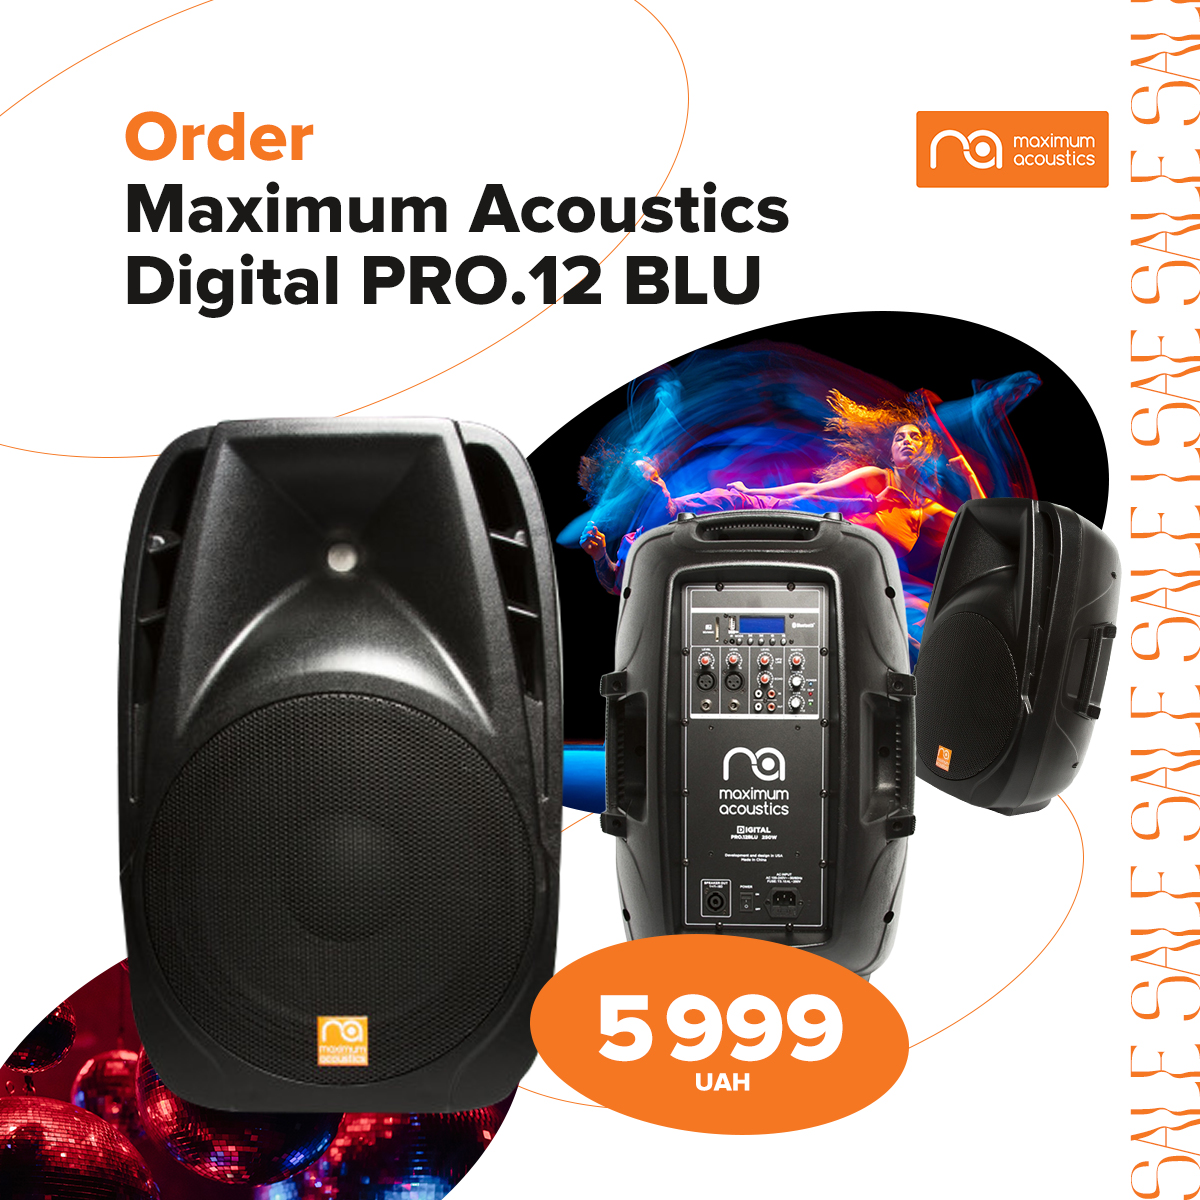 Купуйте акустичну систему Digital PRO.12 BLU за акційною ціною 5999 грн